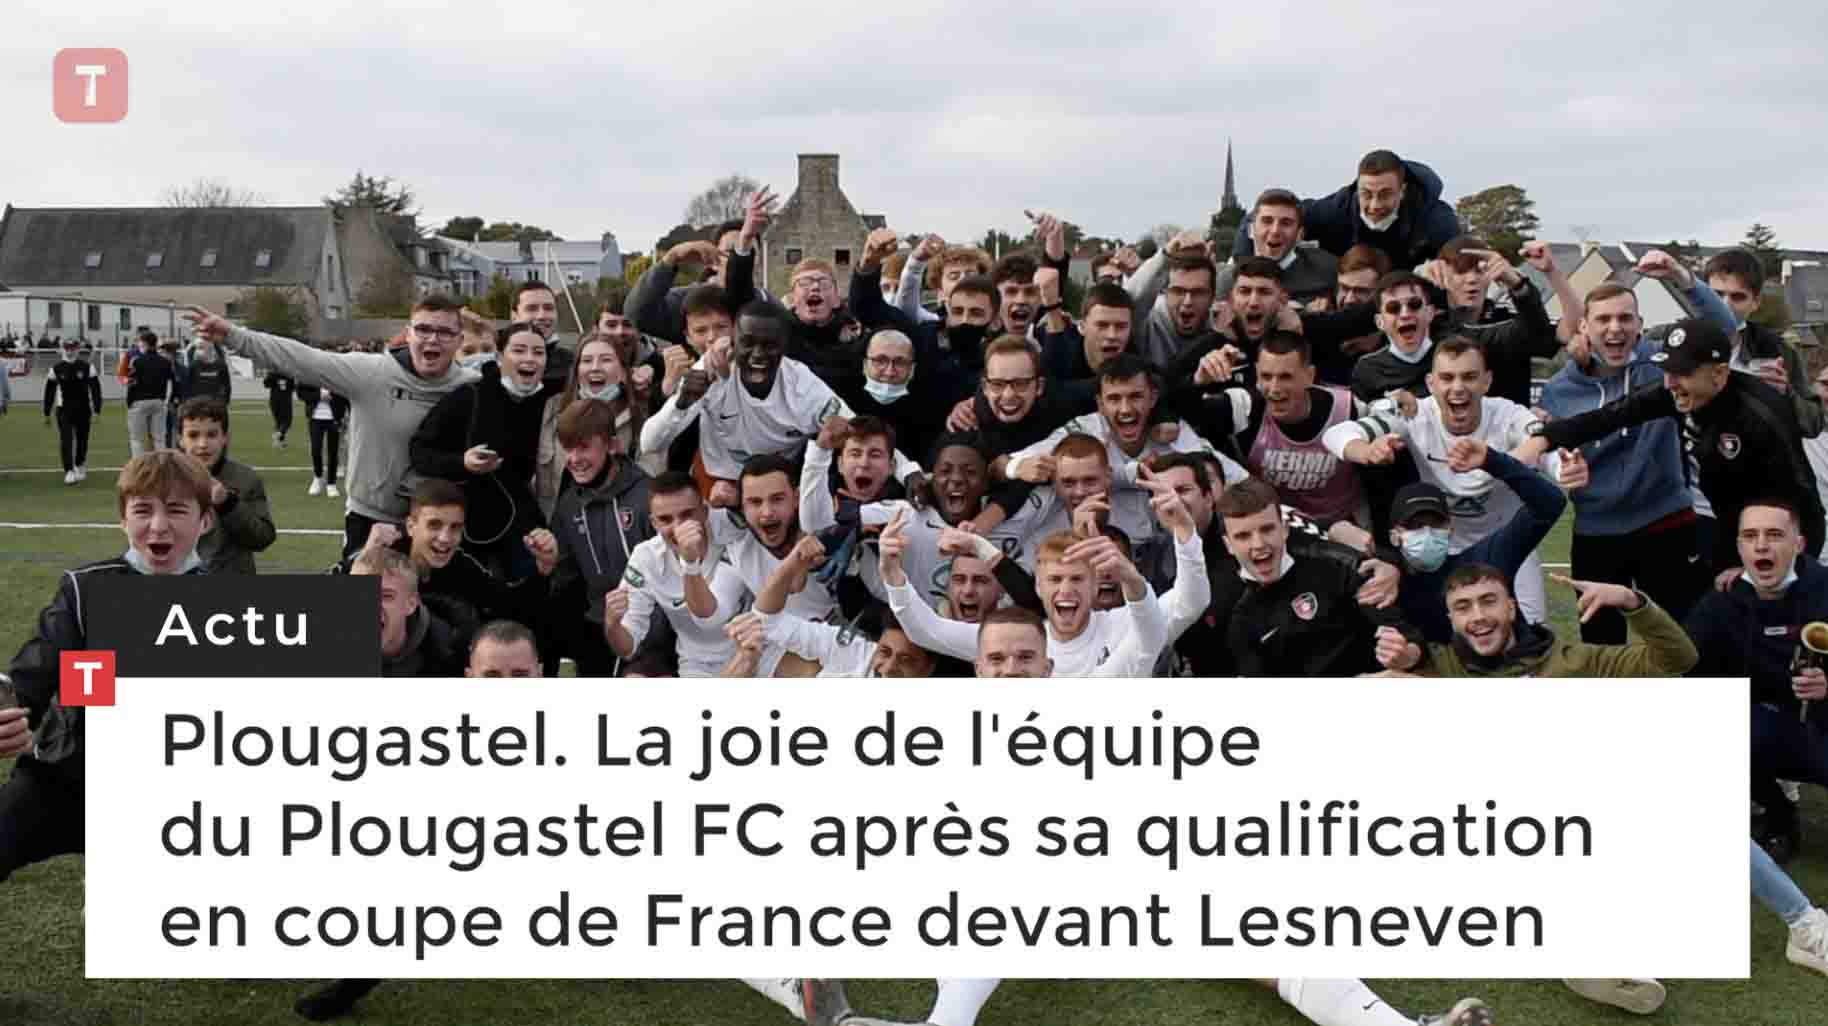 Plougastel. La joie de l'équipe du Plougastel FC après sa qualification en coupe de France devant Lesneven (Le Télégramme)